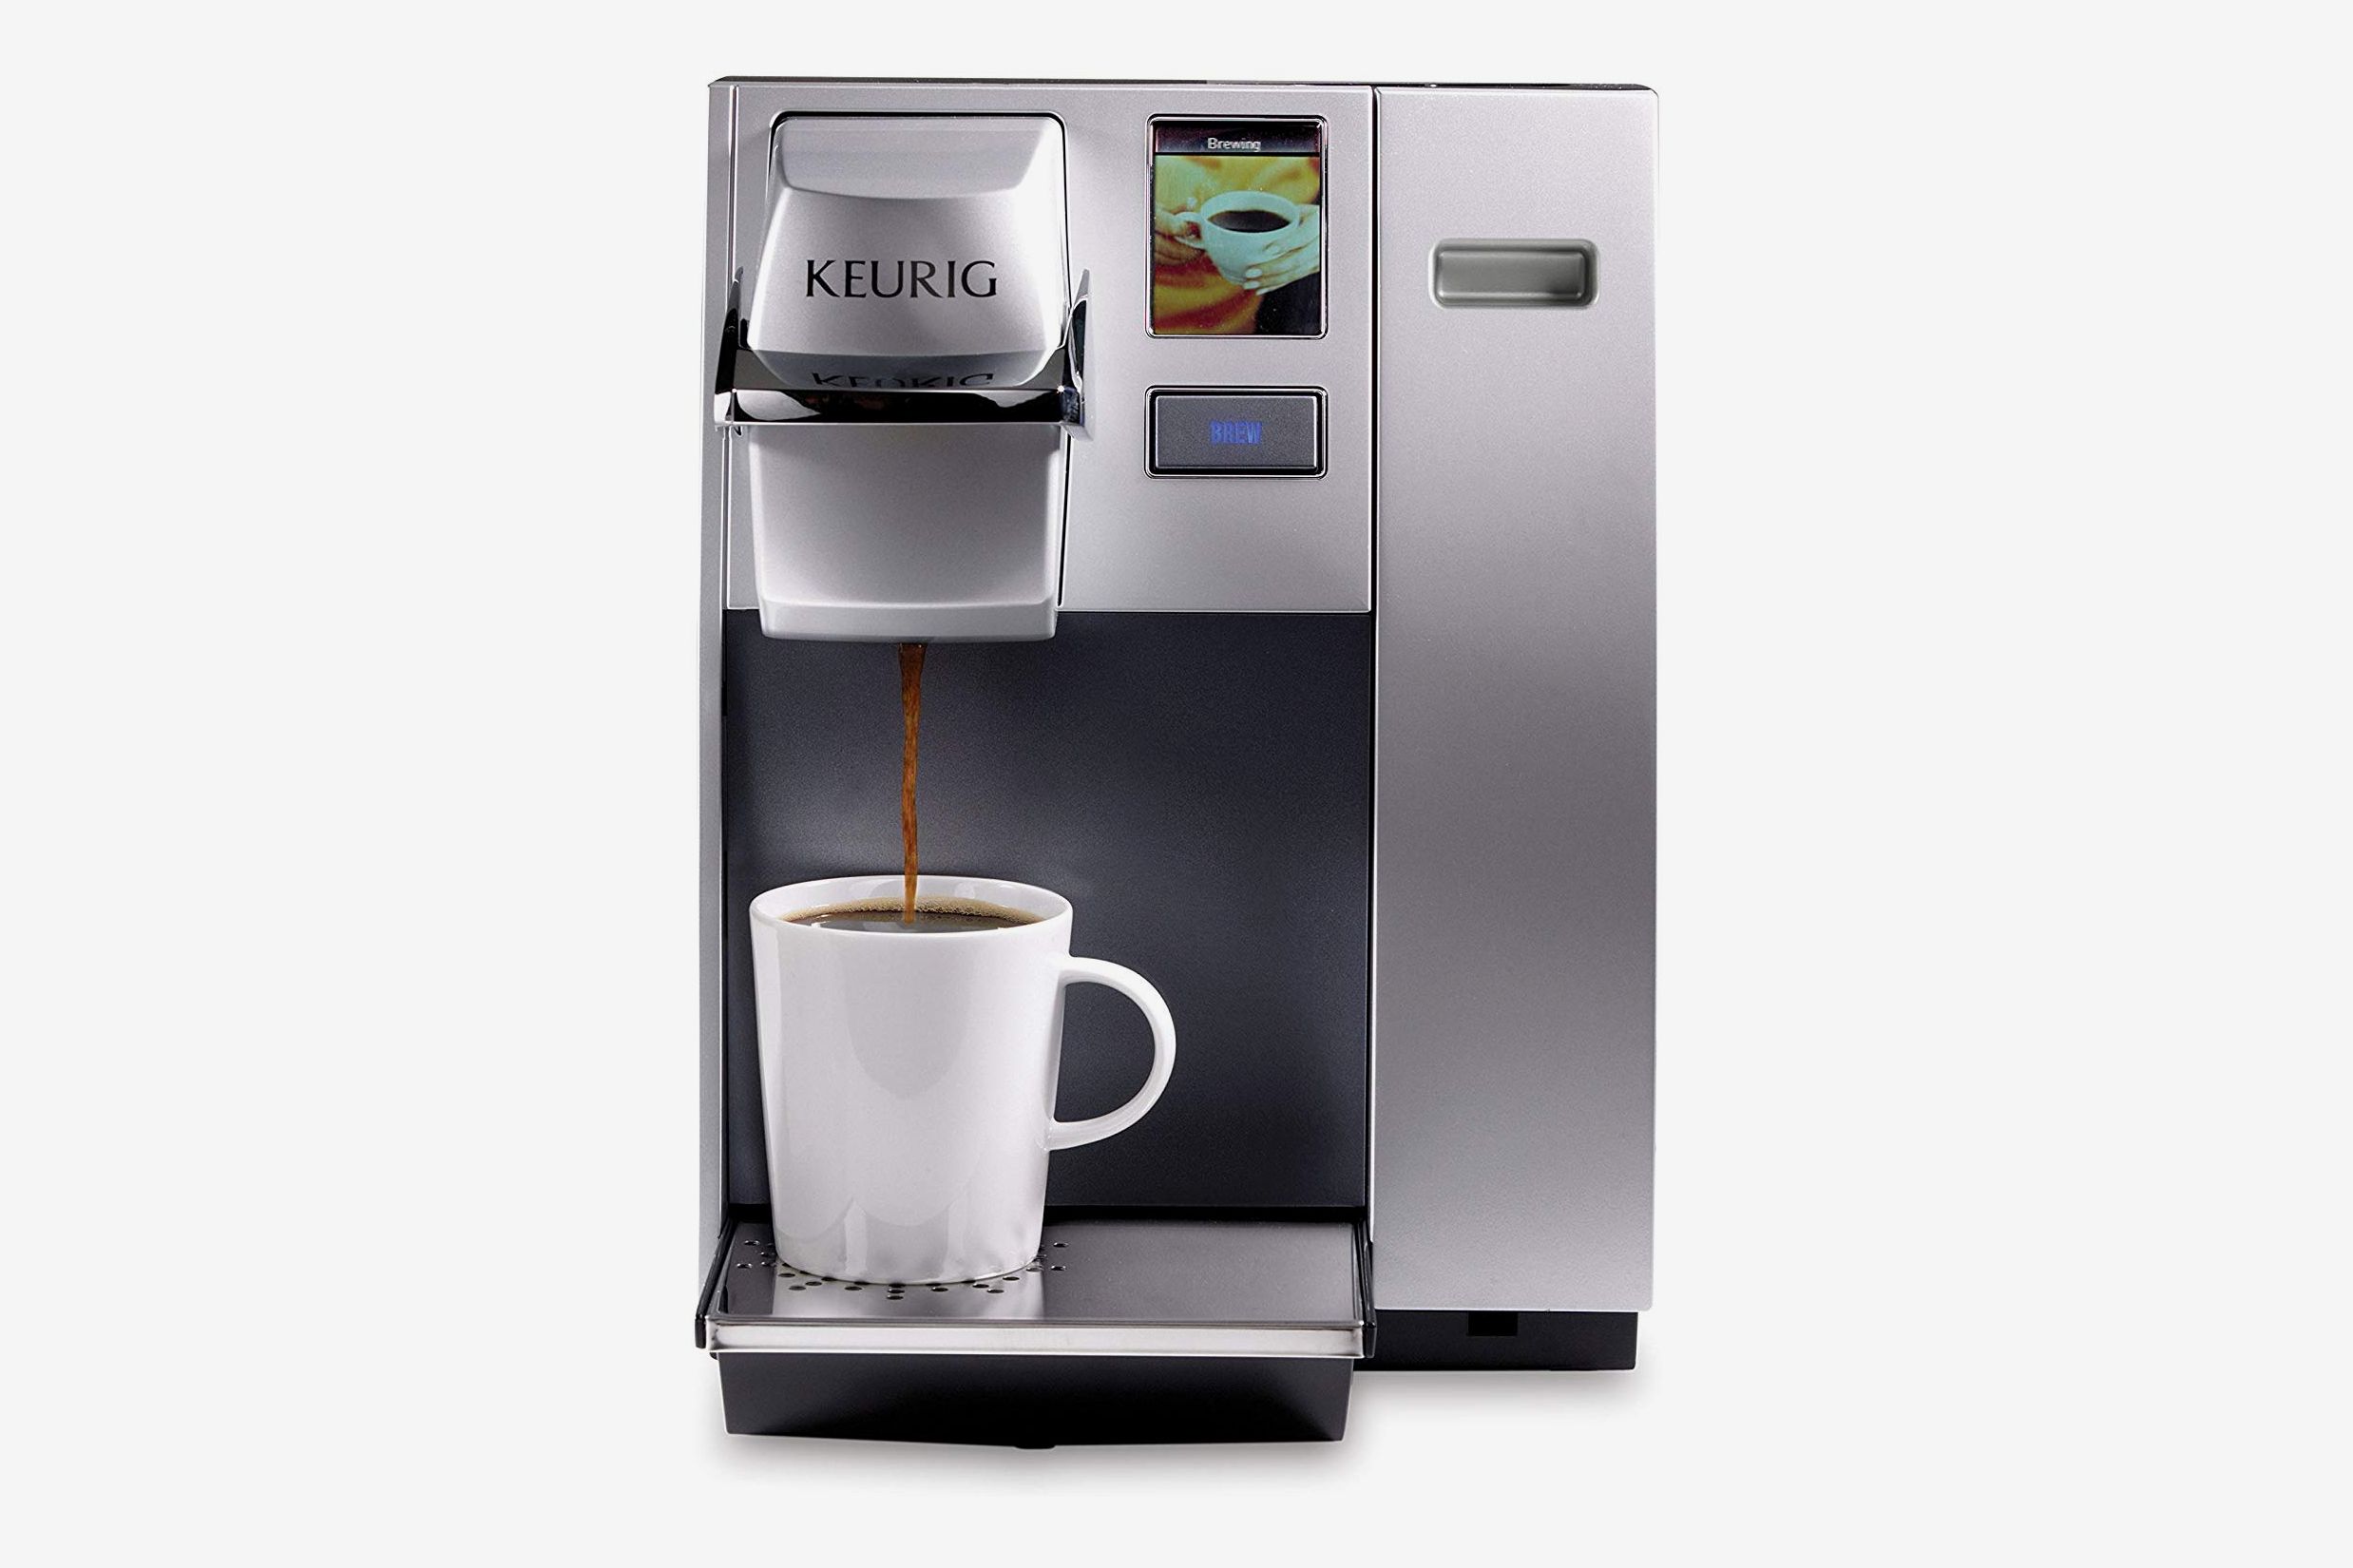 https://pyxis.nymag.com/v1/imgs/133/e16/038bf0d86004d18fa095ecf2c1e8151fe8-keurig-office-pro-commercial-coffee-make.jpg